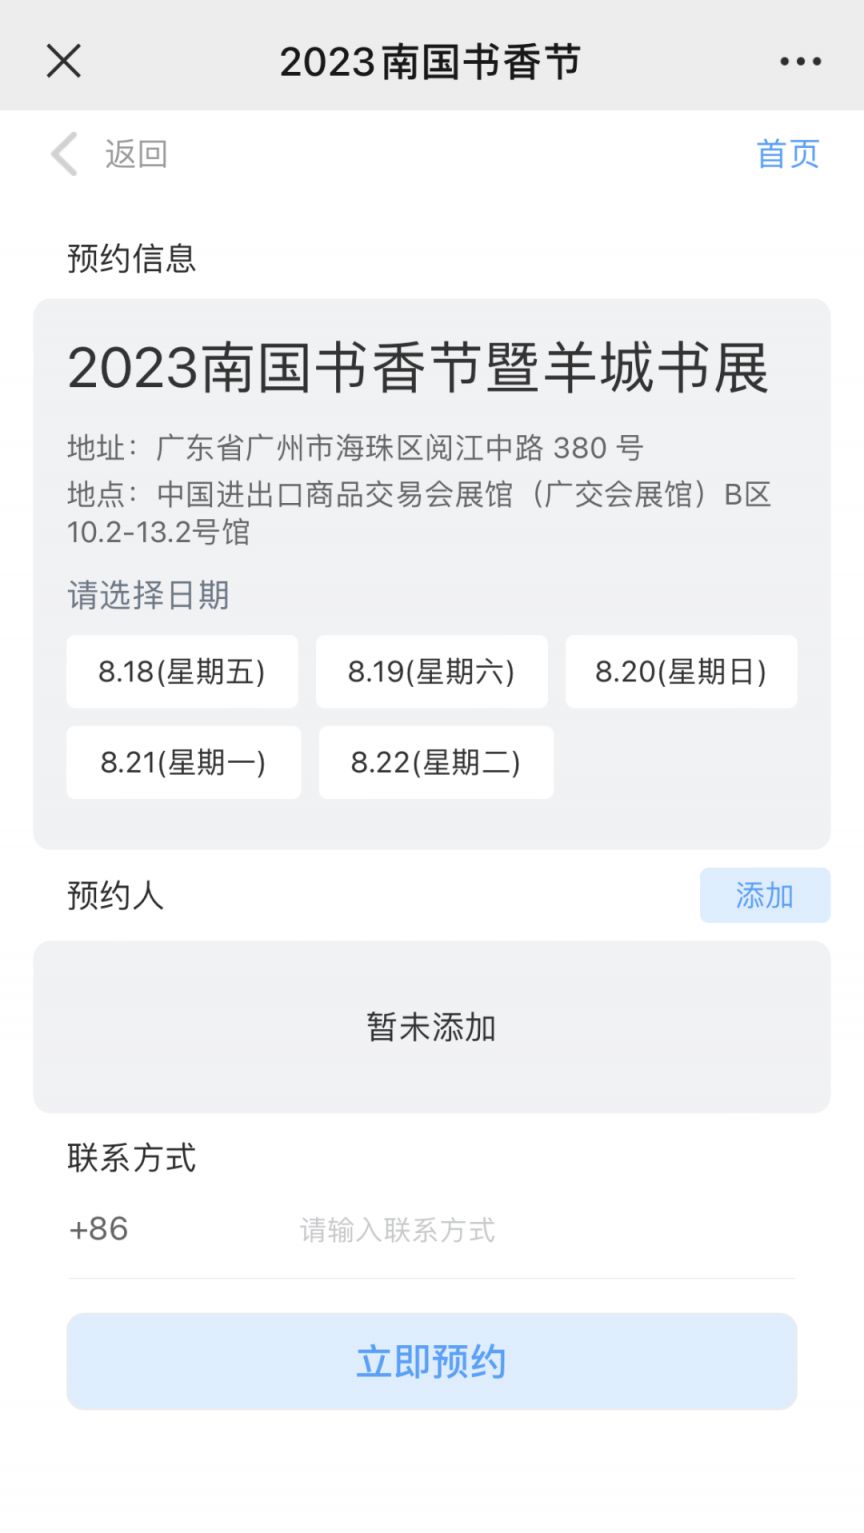 2023年广州南国书香节门票需要钱吗？